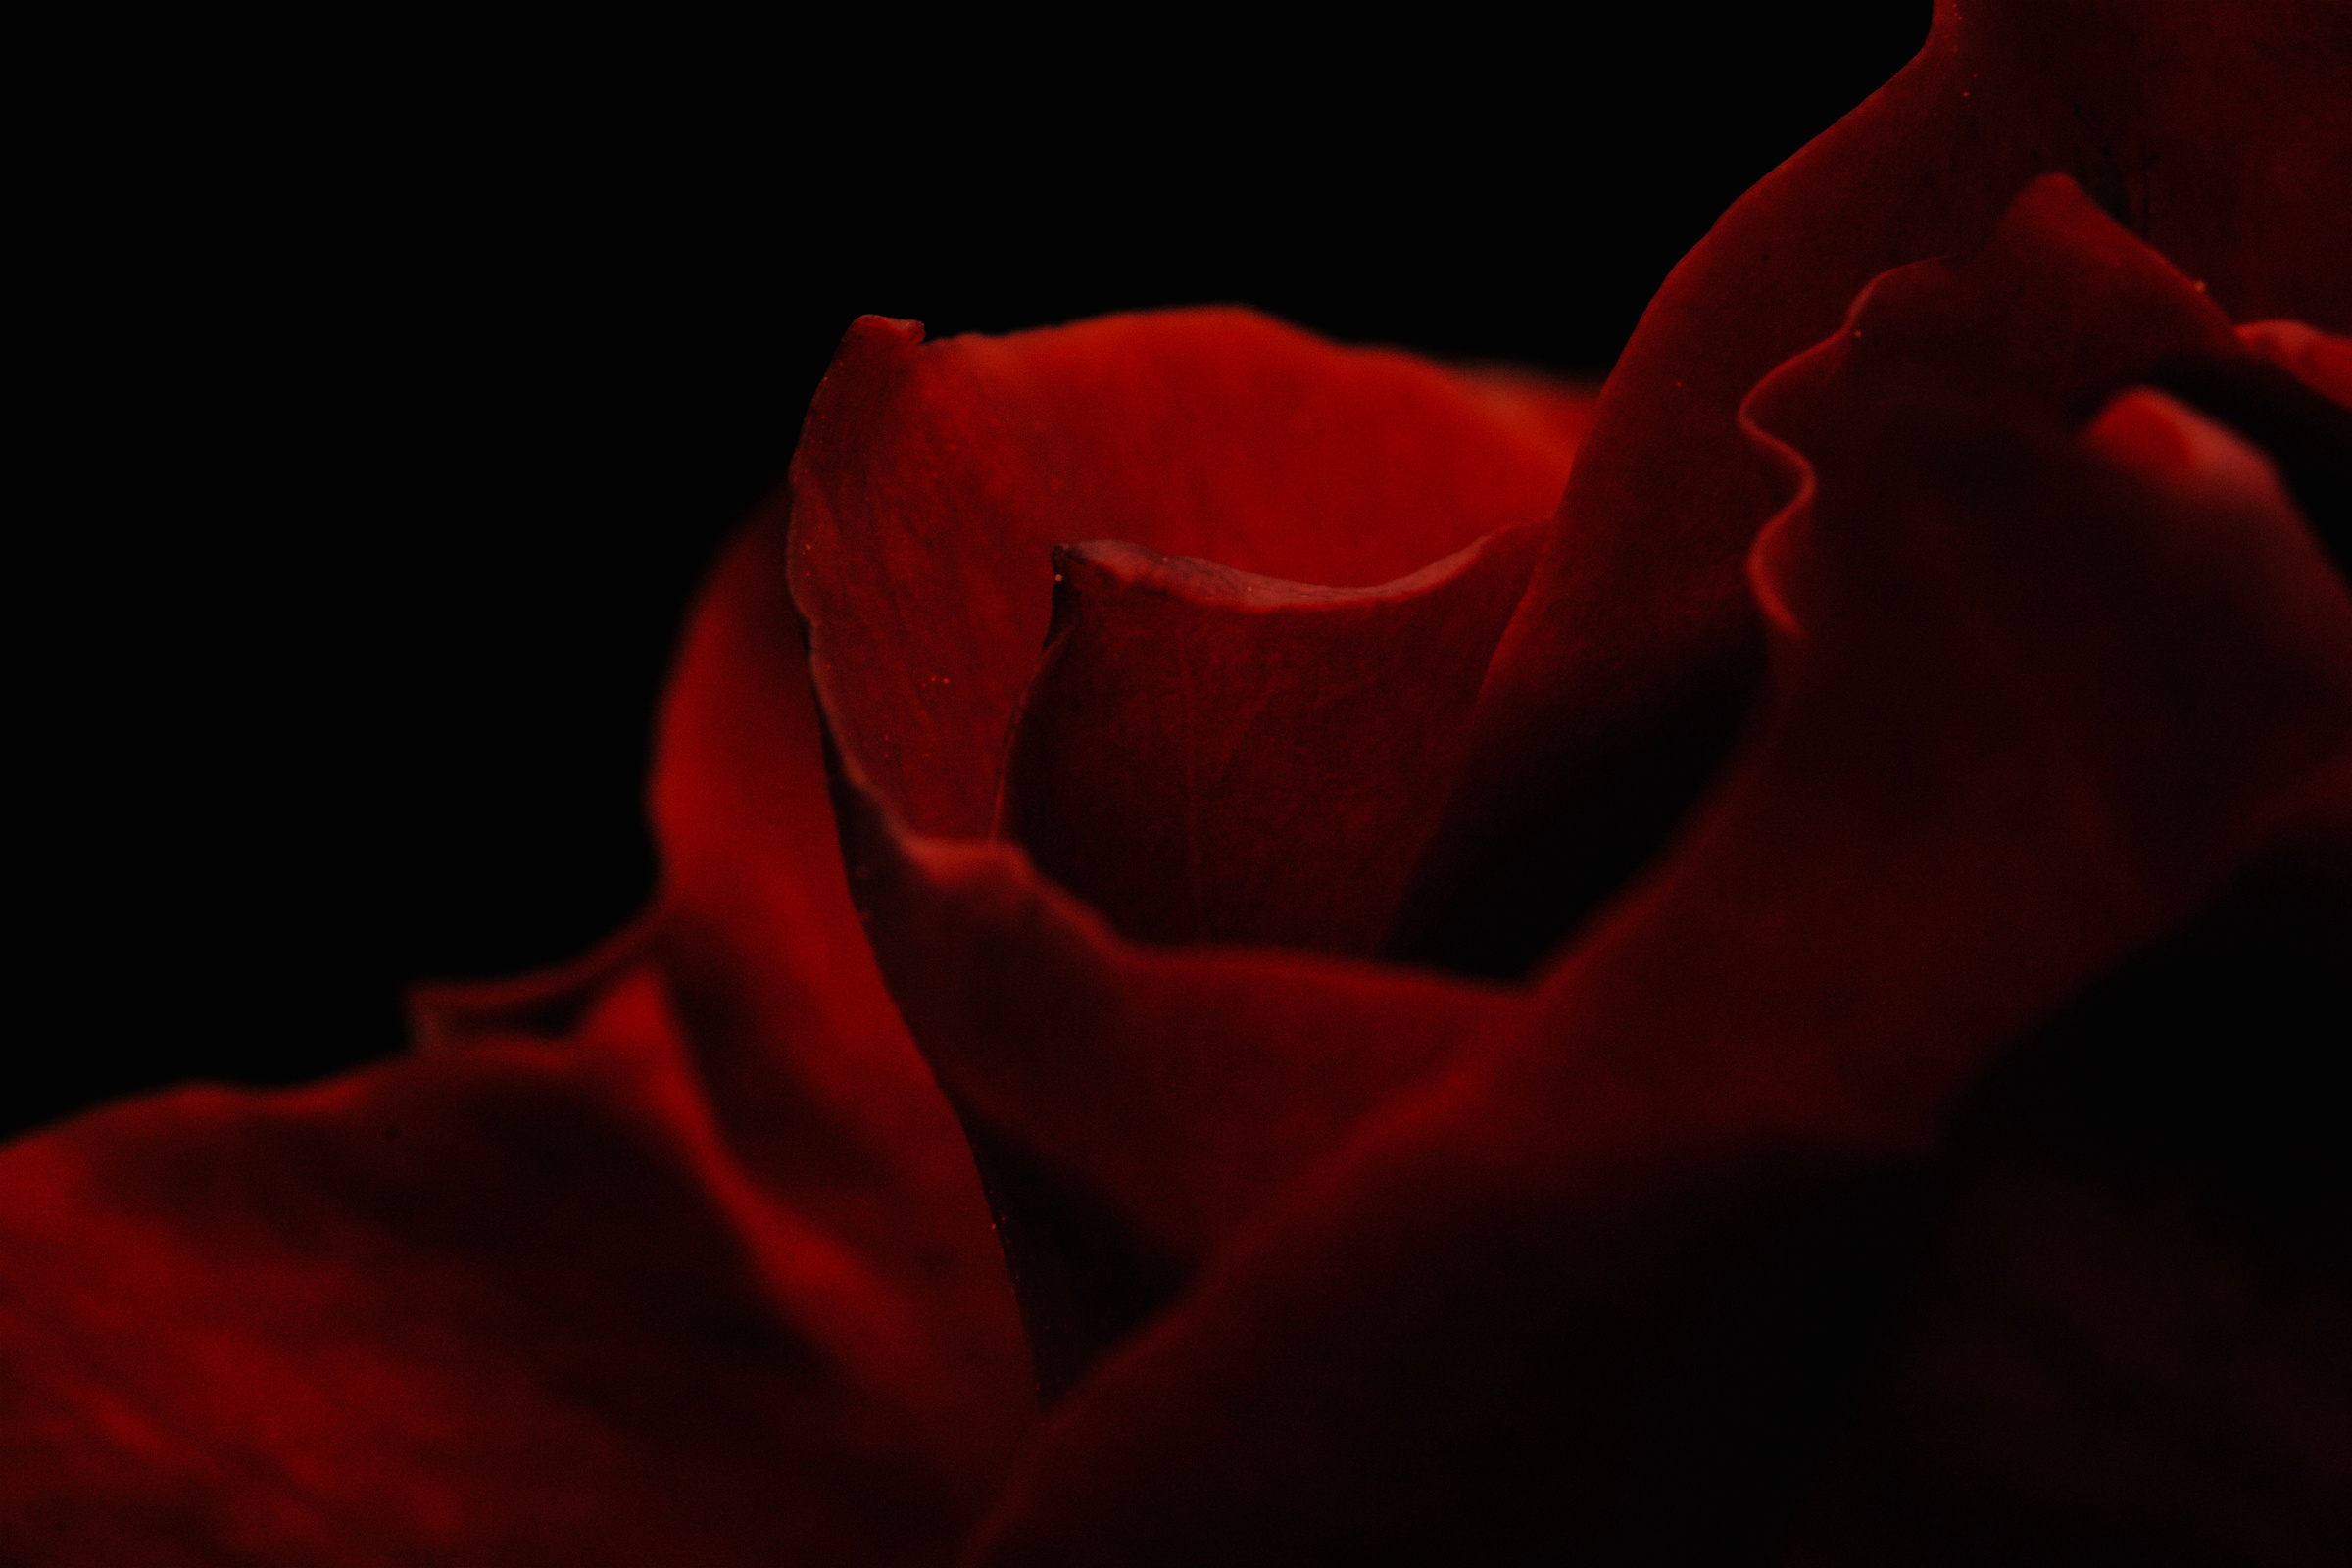 Red Rose in Dark Room